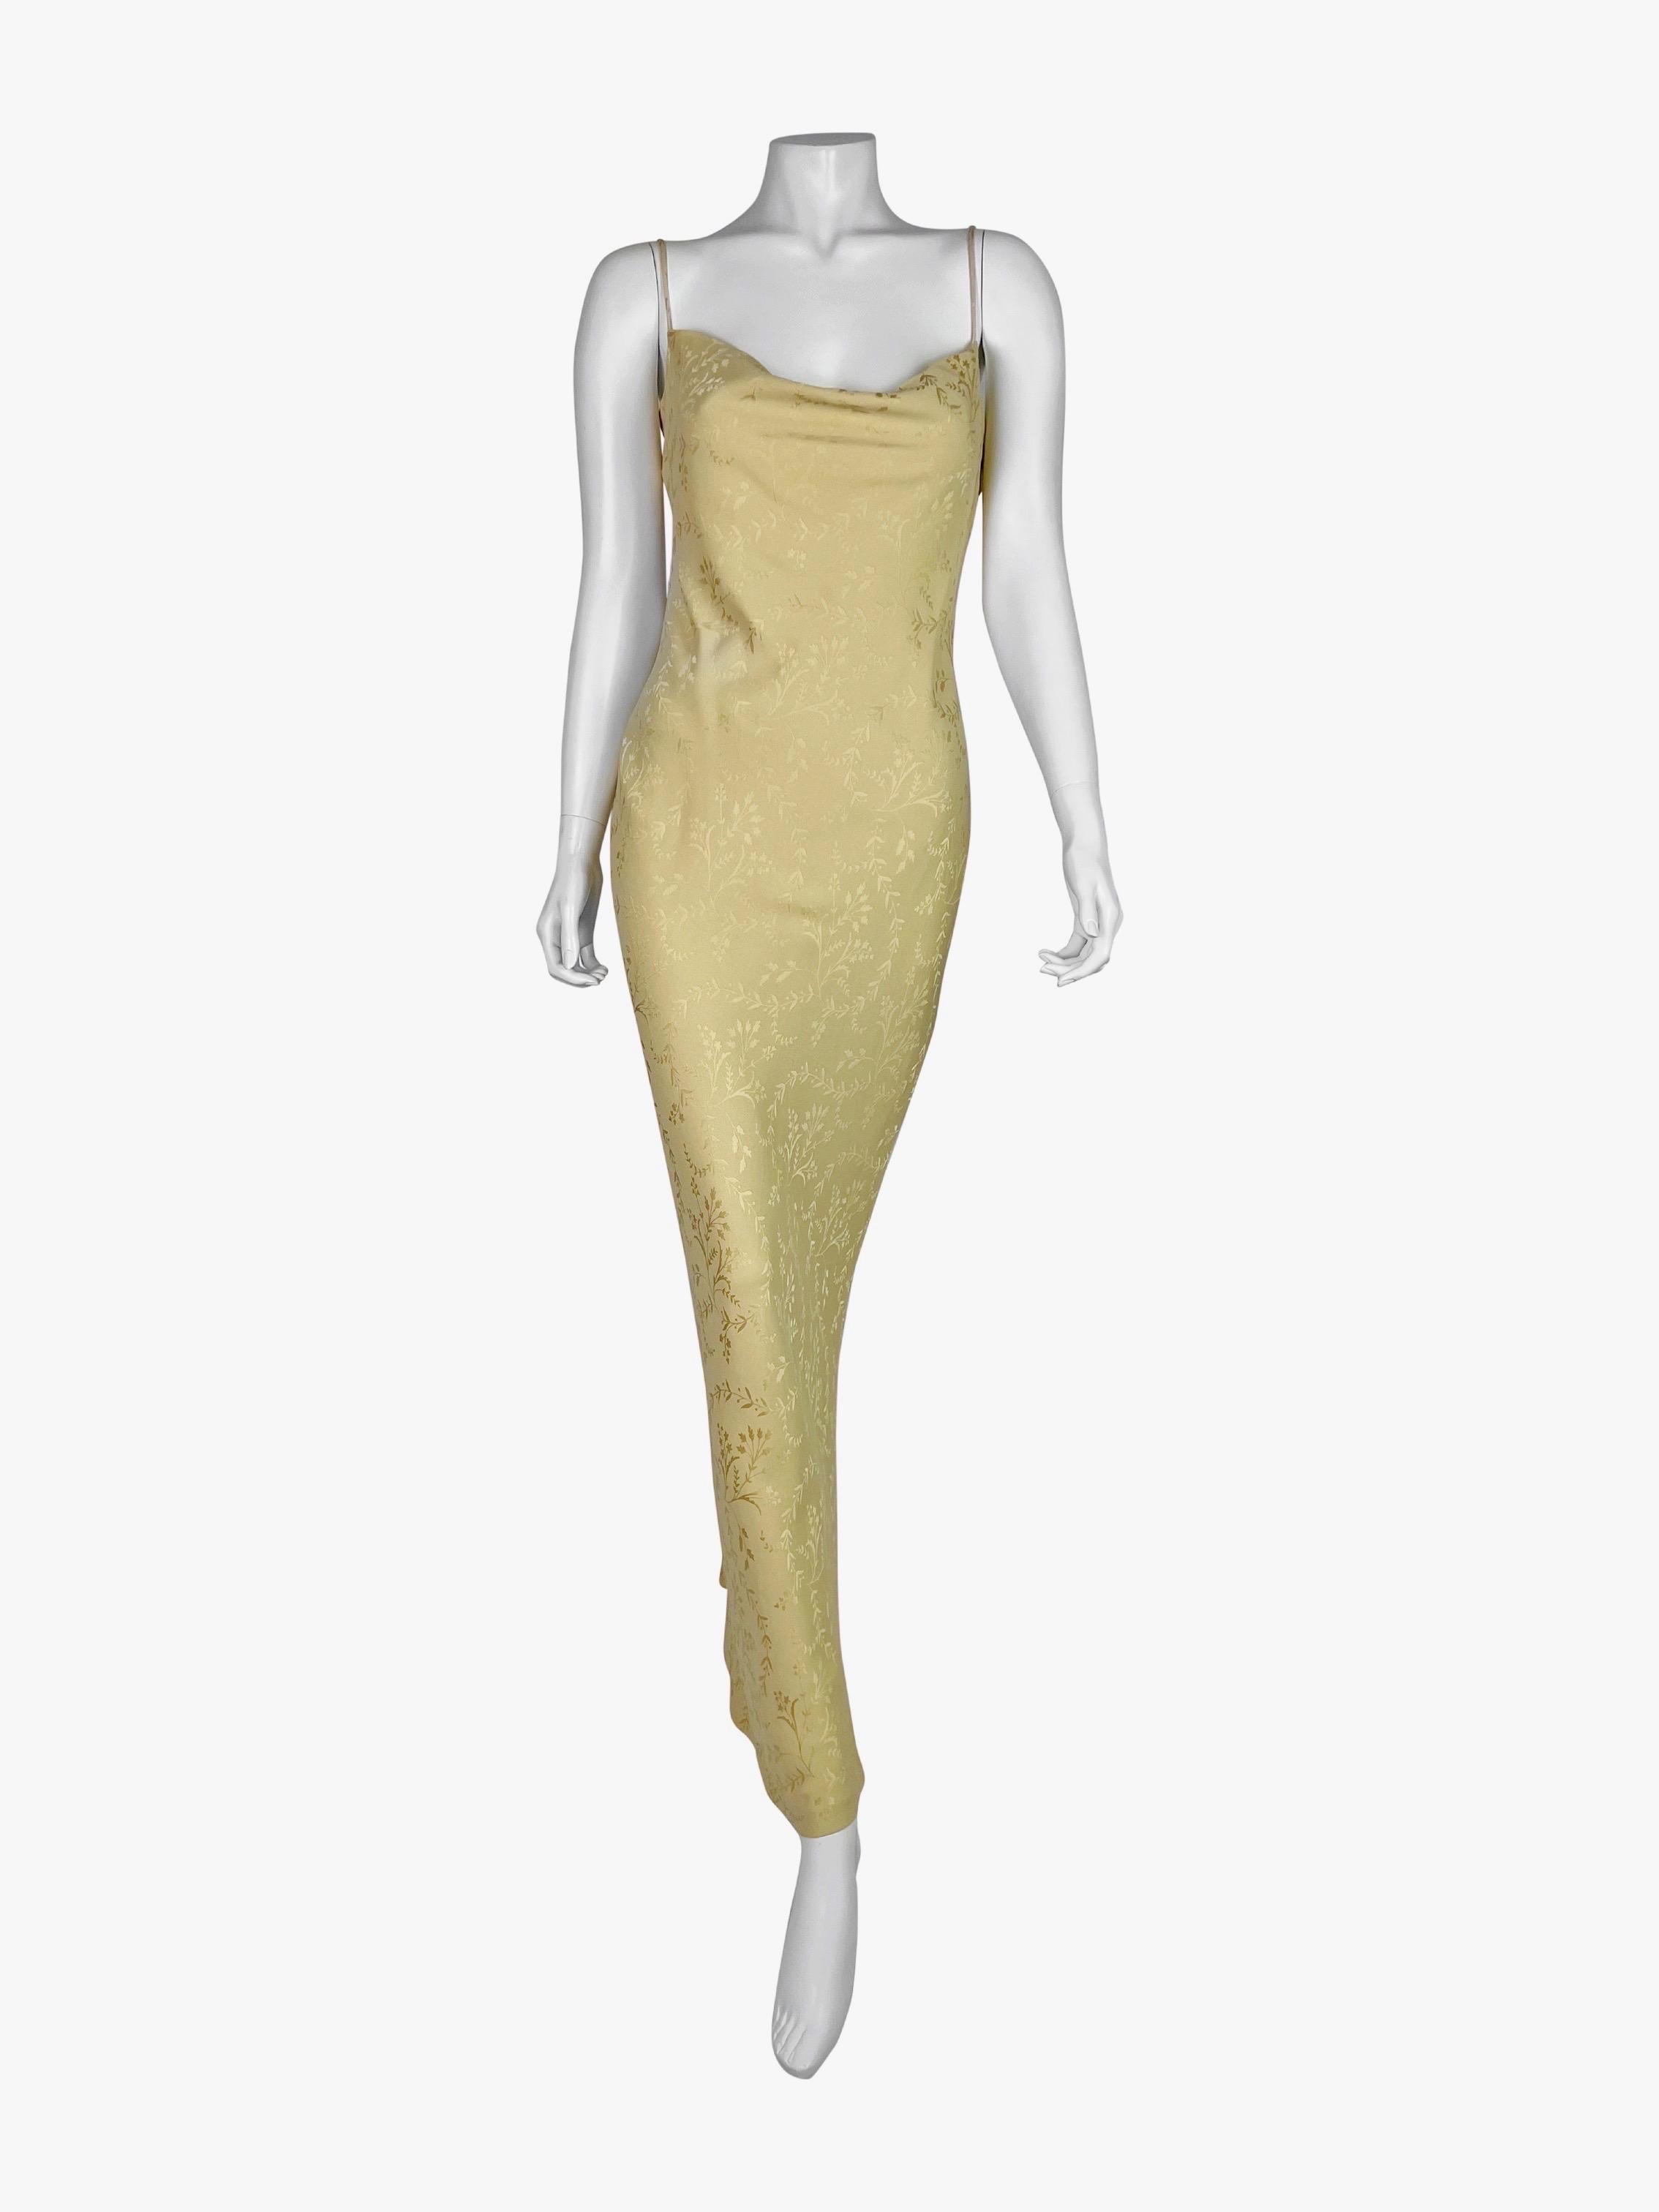 Une robe classique coupée en biais, issue des meilleures années de Galliano chez Dior, dans un magnifique jacquard jaune crème au beurre.

Taille FR 42, US 10.

Mesures (à plat sur un côté) :

D'aisselle à aisselle - 48 cm (19 in)
Taille - 44 cm